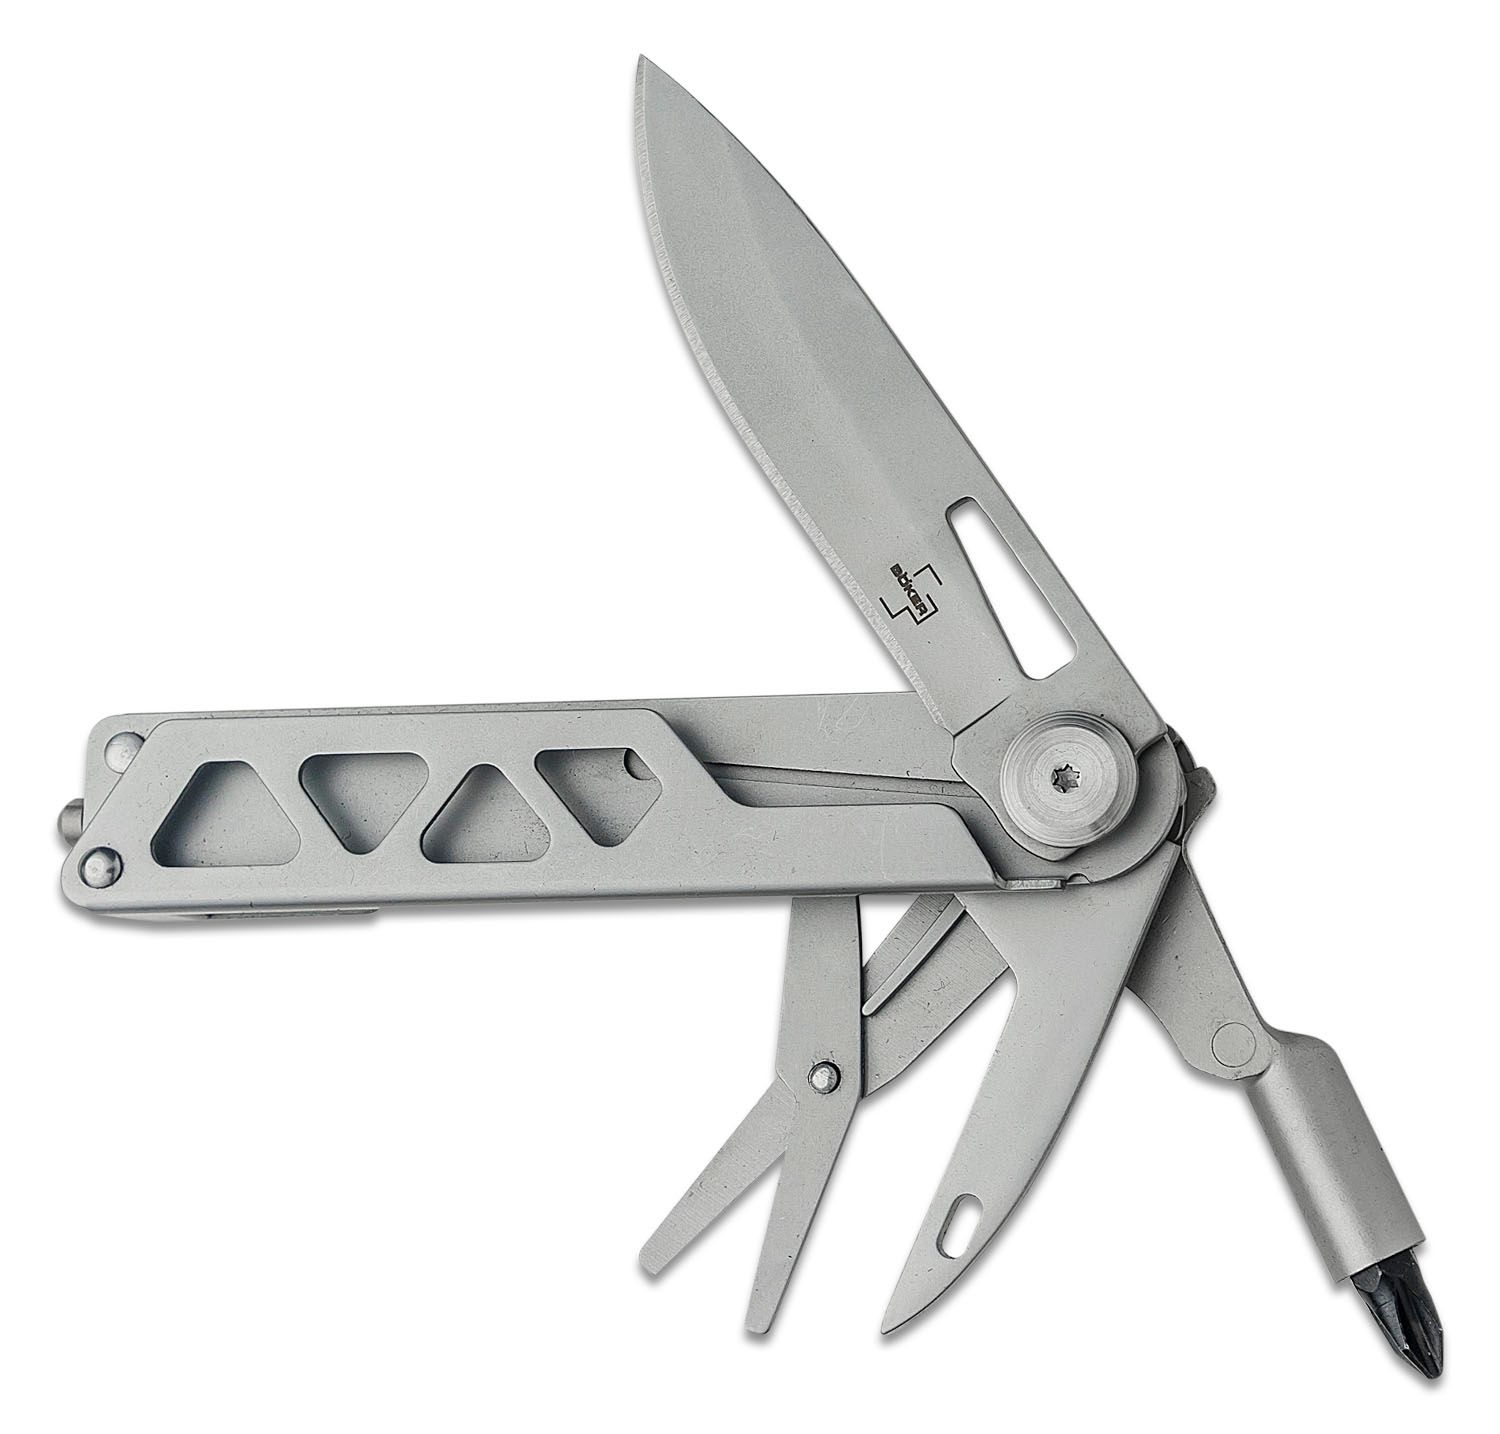 dansk Indgang Vanærende Boker Plus Specialist Half-Tool Multi-Tool, Stainless Steel Handles, Nylon  Sheath - KnifeCenter - 09BO831